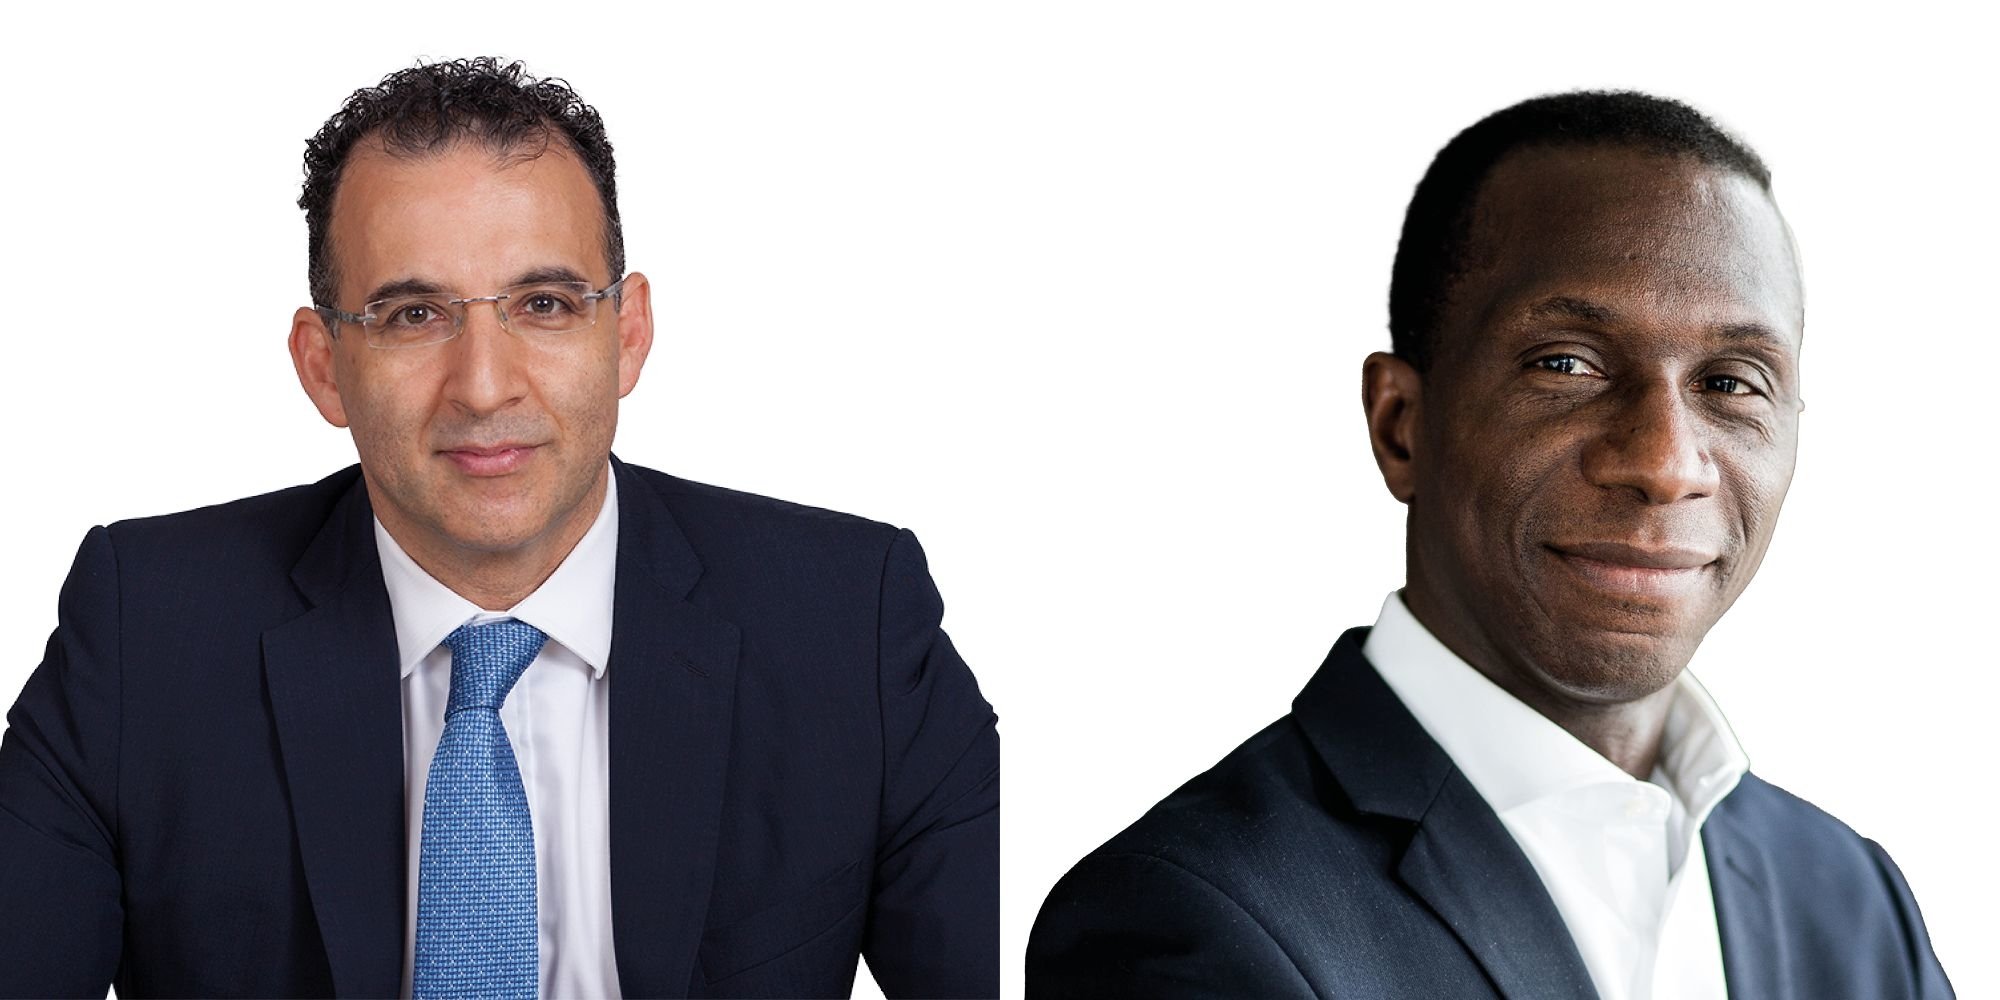 Der neue Senior Partner Khalid Garousha (l.) und der neue Managing Partner Hervé (r.).